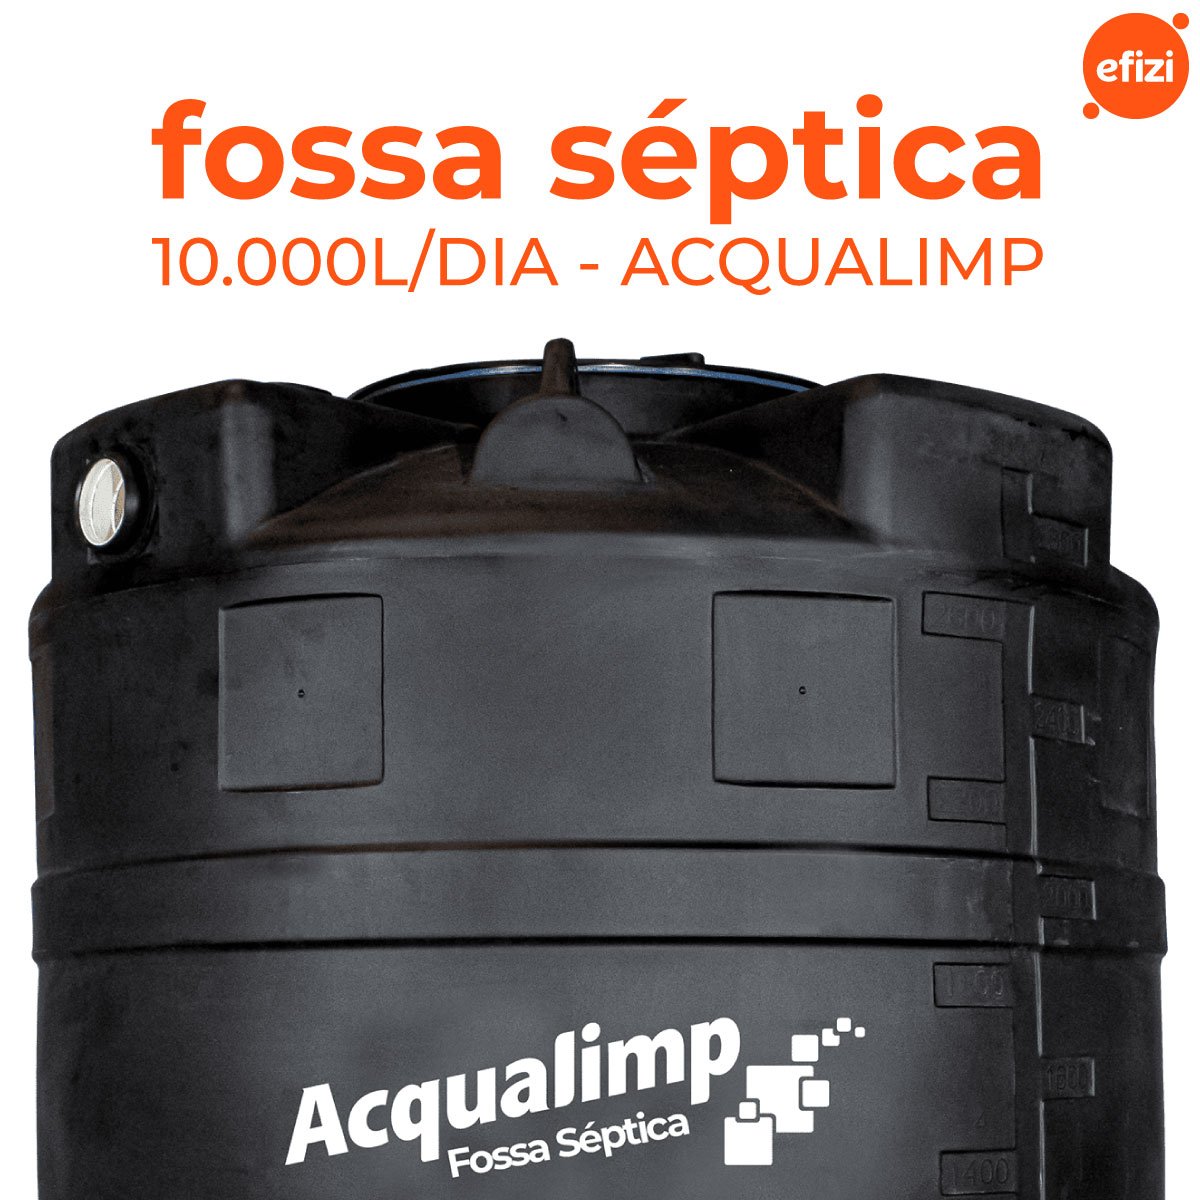 Fossa Séptica 10.000l Acqualimp - 2